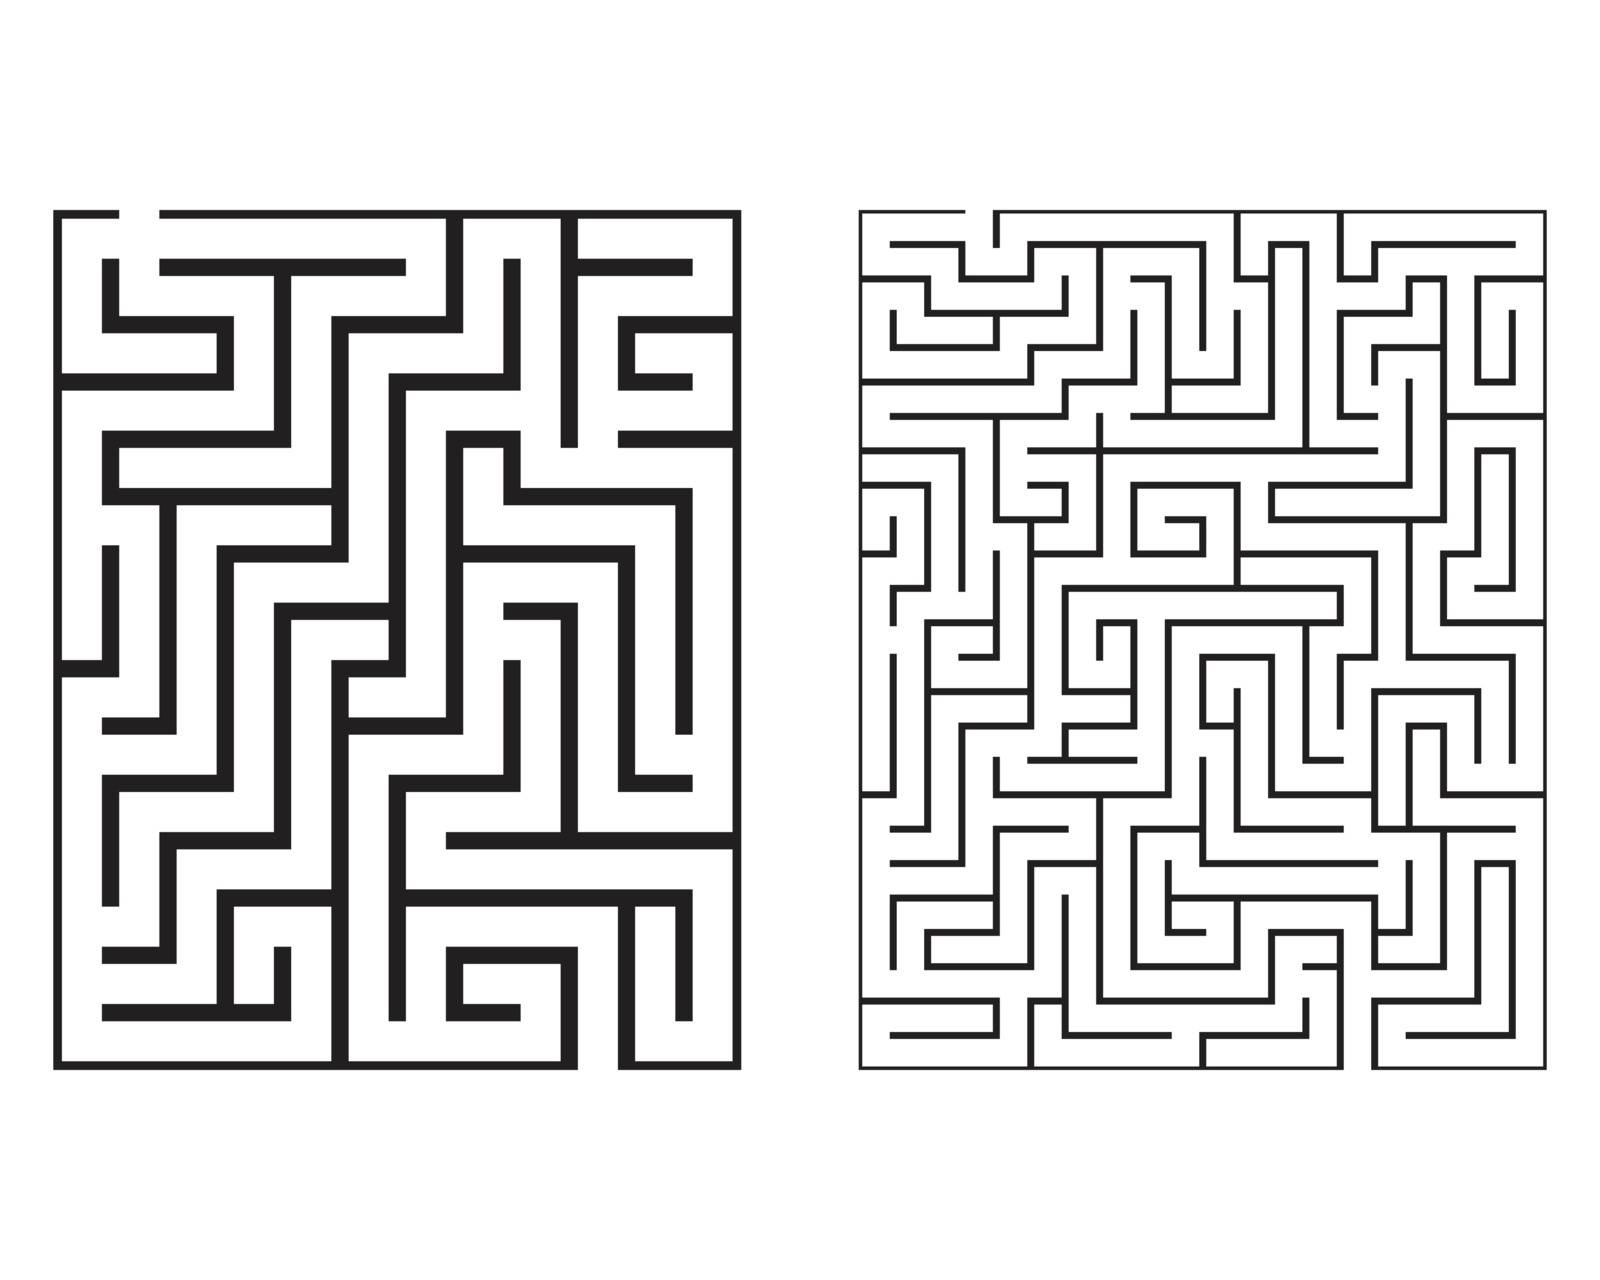 Maze / Labyrinth, illustration by ratkomat